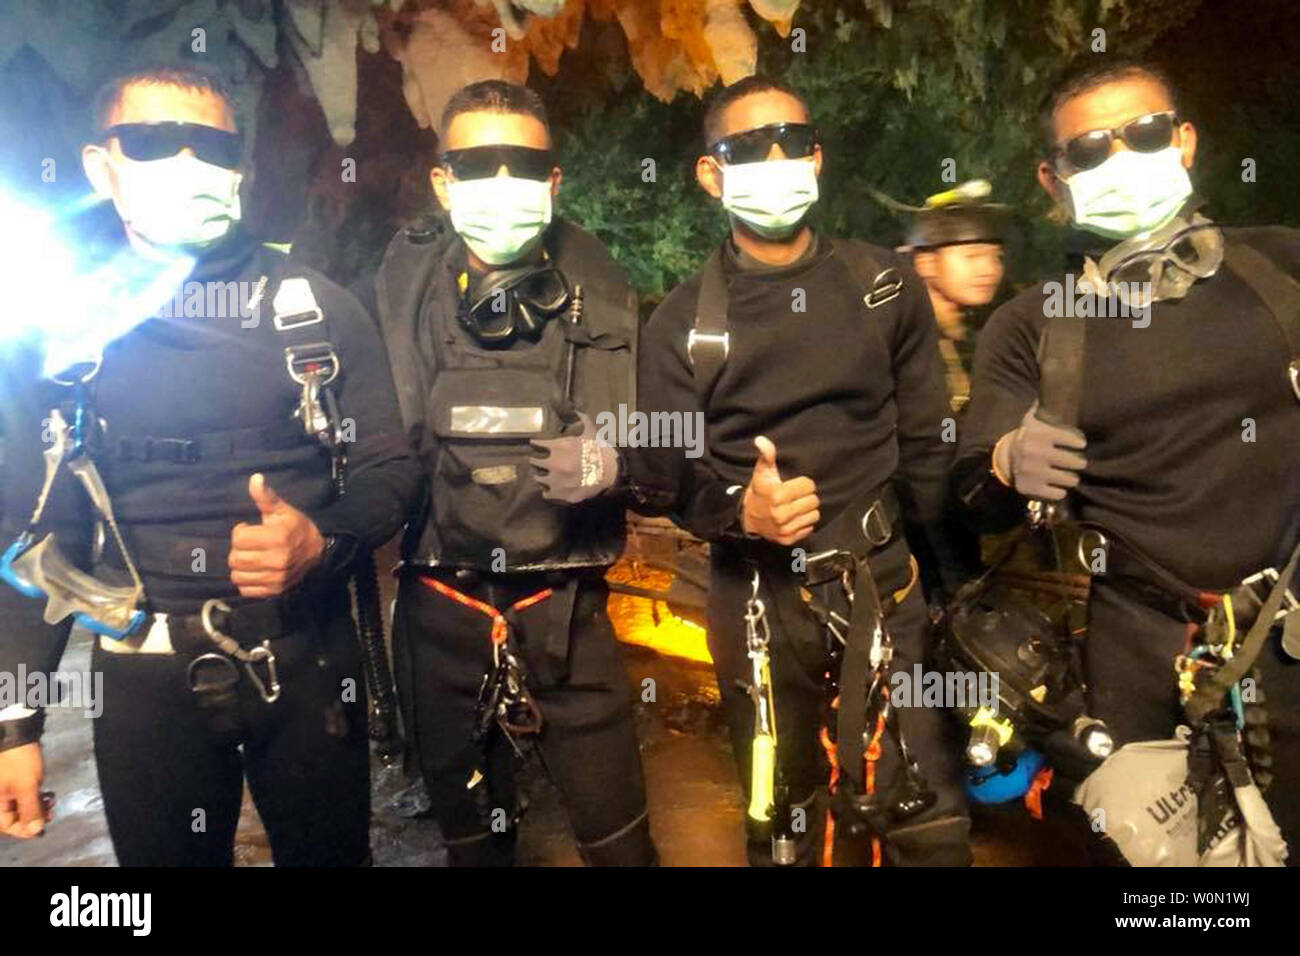 Quatre membres de la Royal Thai Navy SEALS donner une thumbs-up après avoir sauvé 12 écoliers, membres d'une équipe de soccer locale, et leur entraîneur, qui étaient coincés dans la grotte Tham Luang réseau dans le Nord de la Thaïlande. Les 13 personnes ont été piégées dans des grottes pendant 18 jours, leur fuite entravé et retardé par la montée des eaux. Photo prise par la Royal Thai Navy SEALS/UPI Banque D'Images